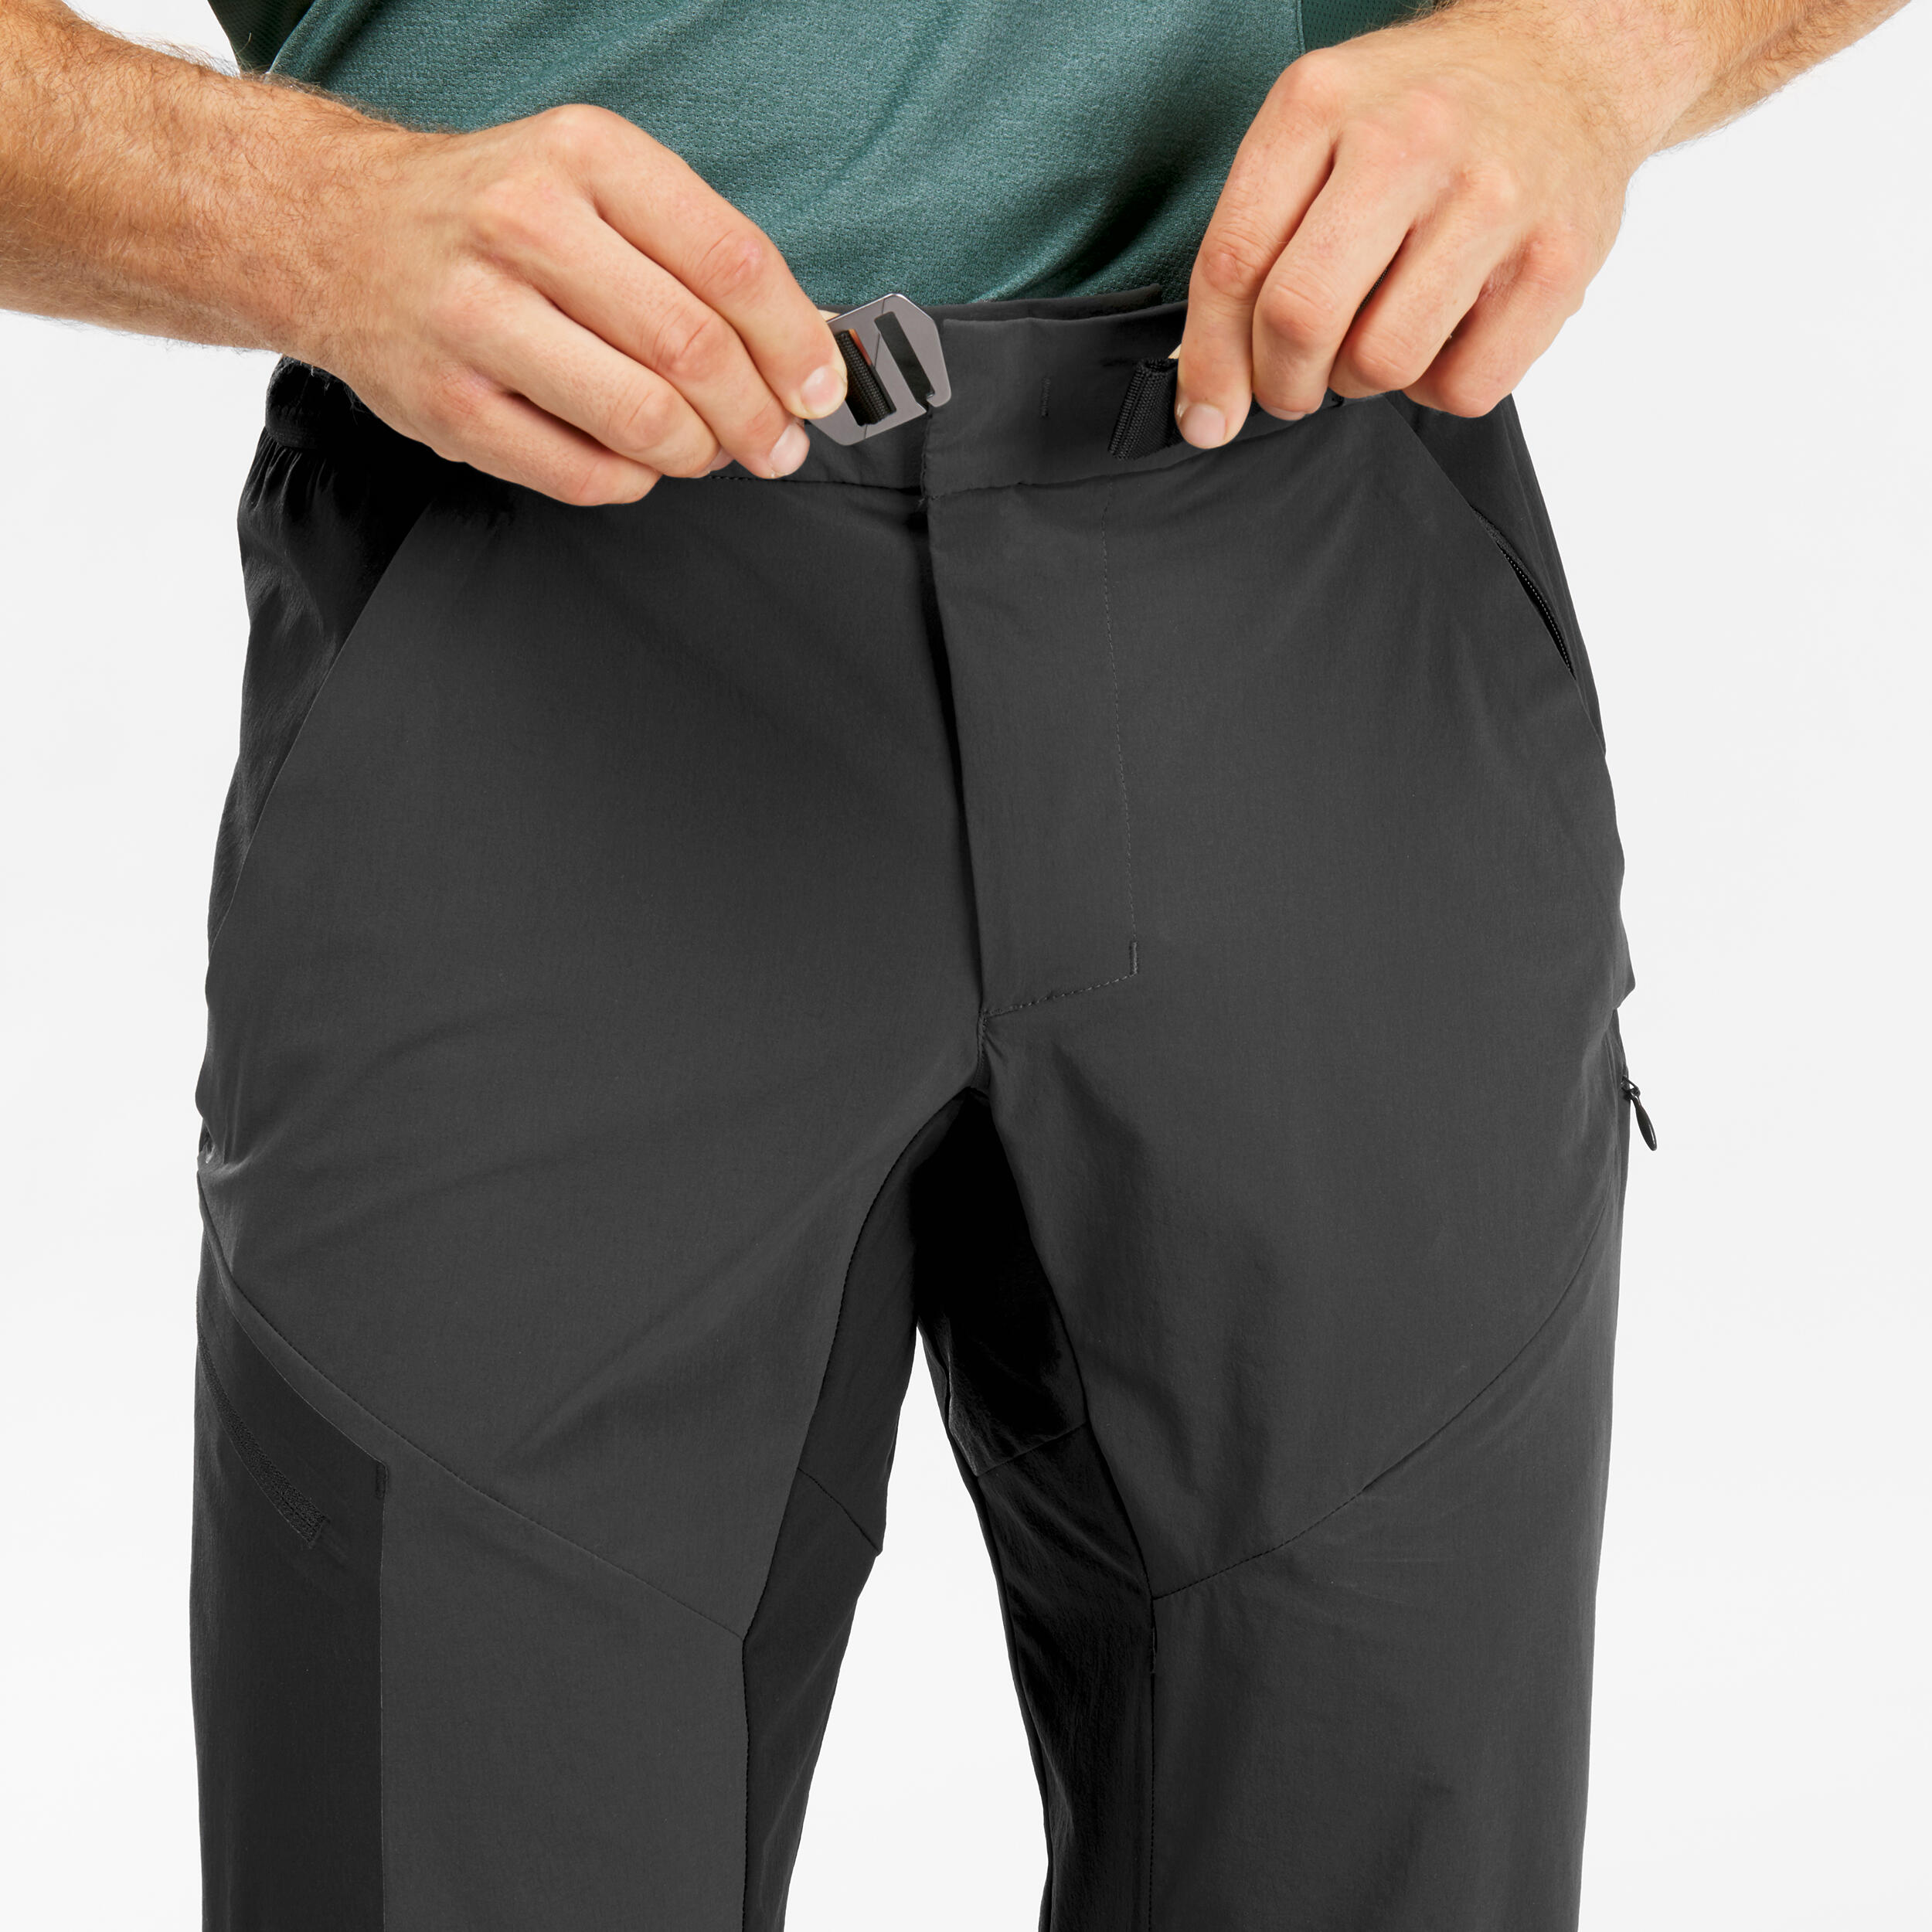 Pantalon de randonnée homme – MH 500 noir/gris - QUECHUA